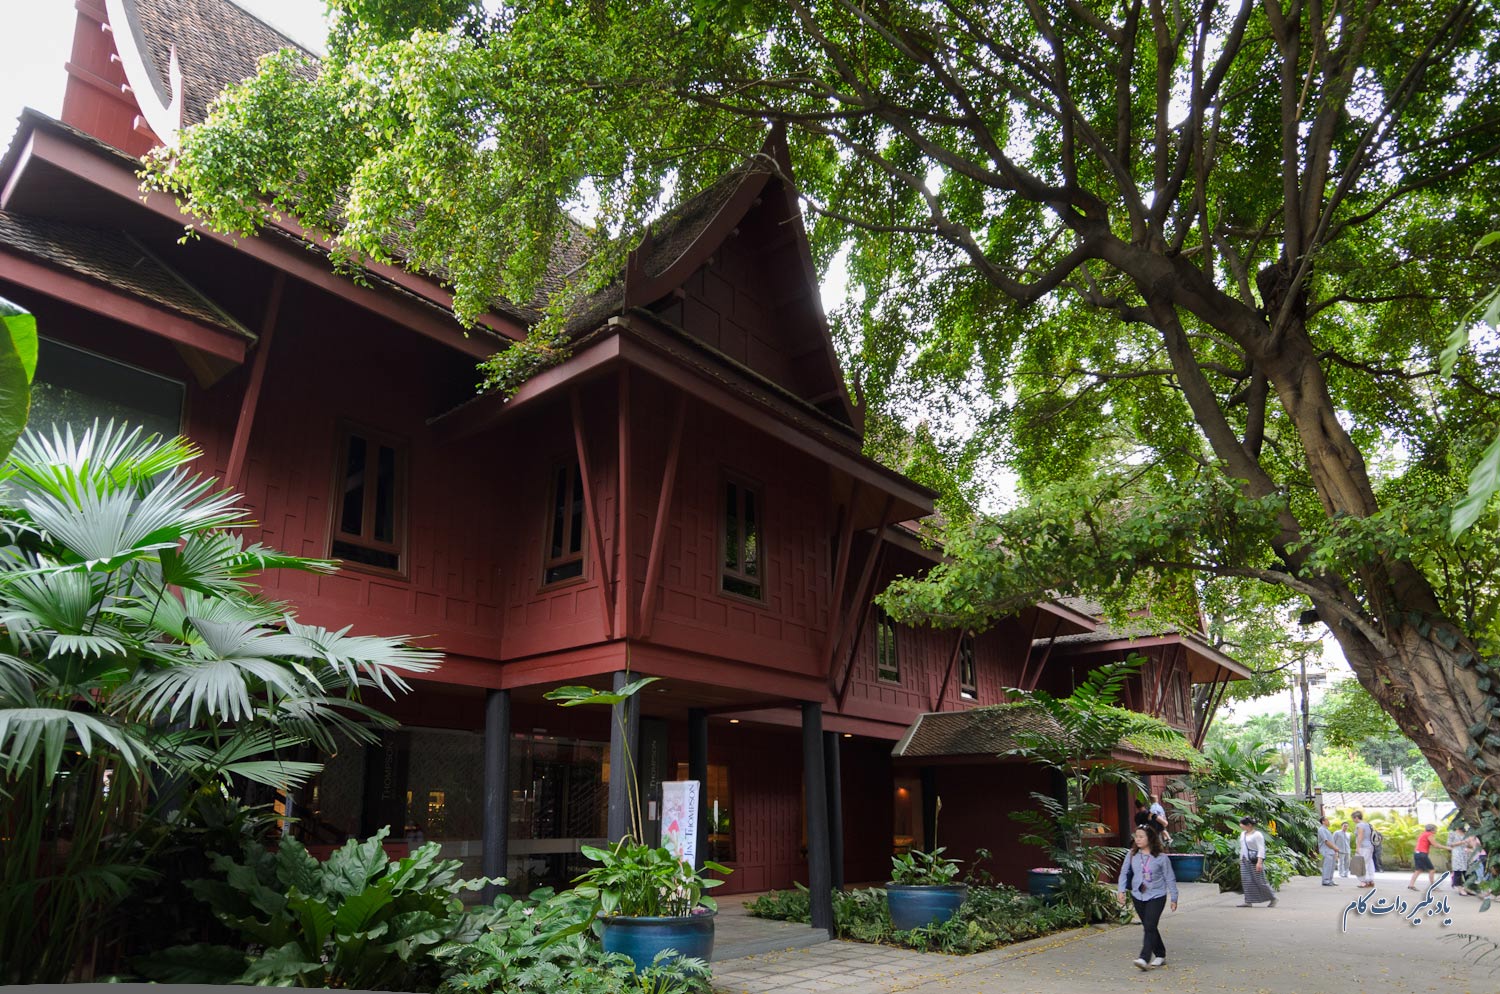 خانه جیم تامسون (موزه) از جاذبه های گردشگری بانکوک